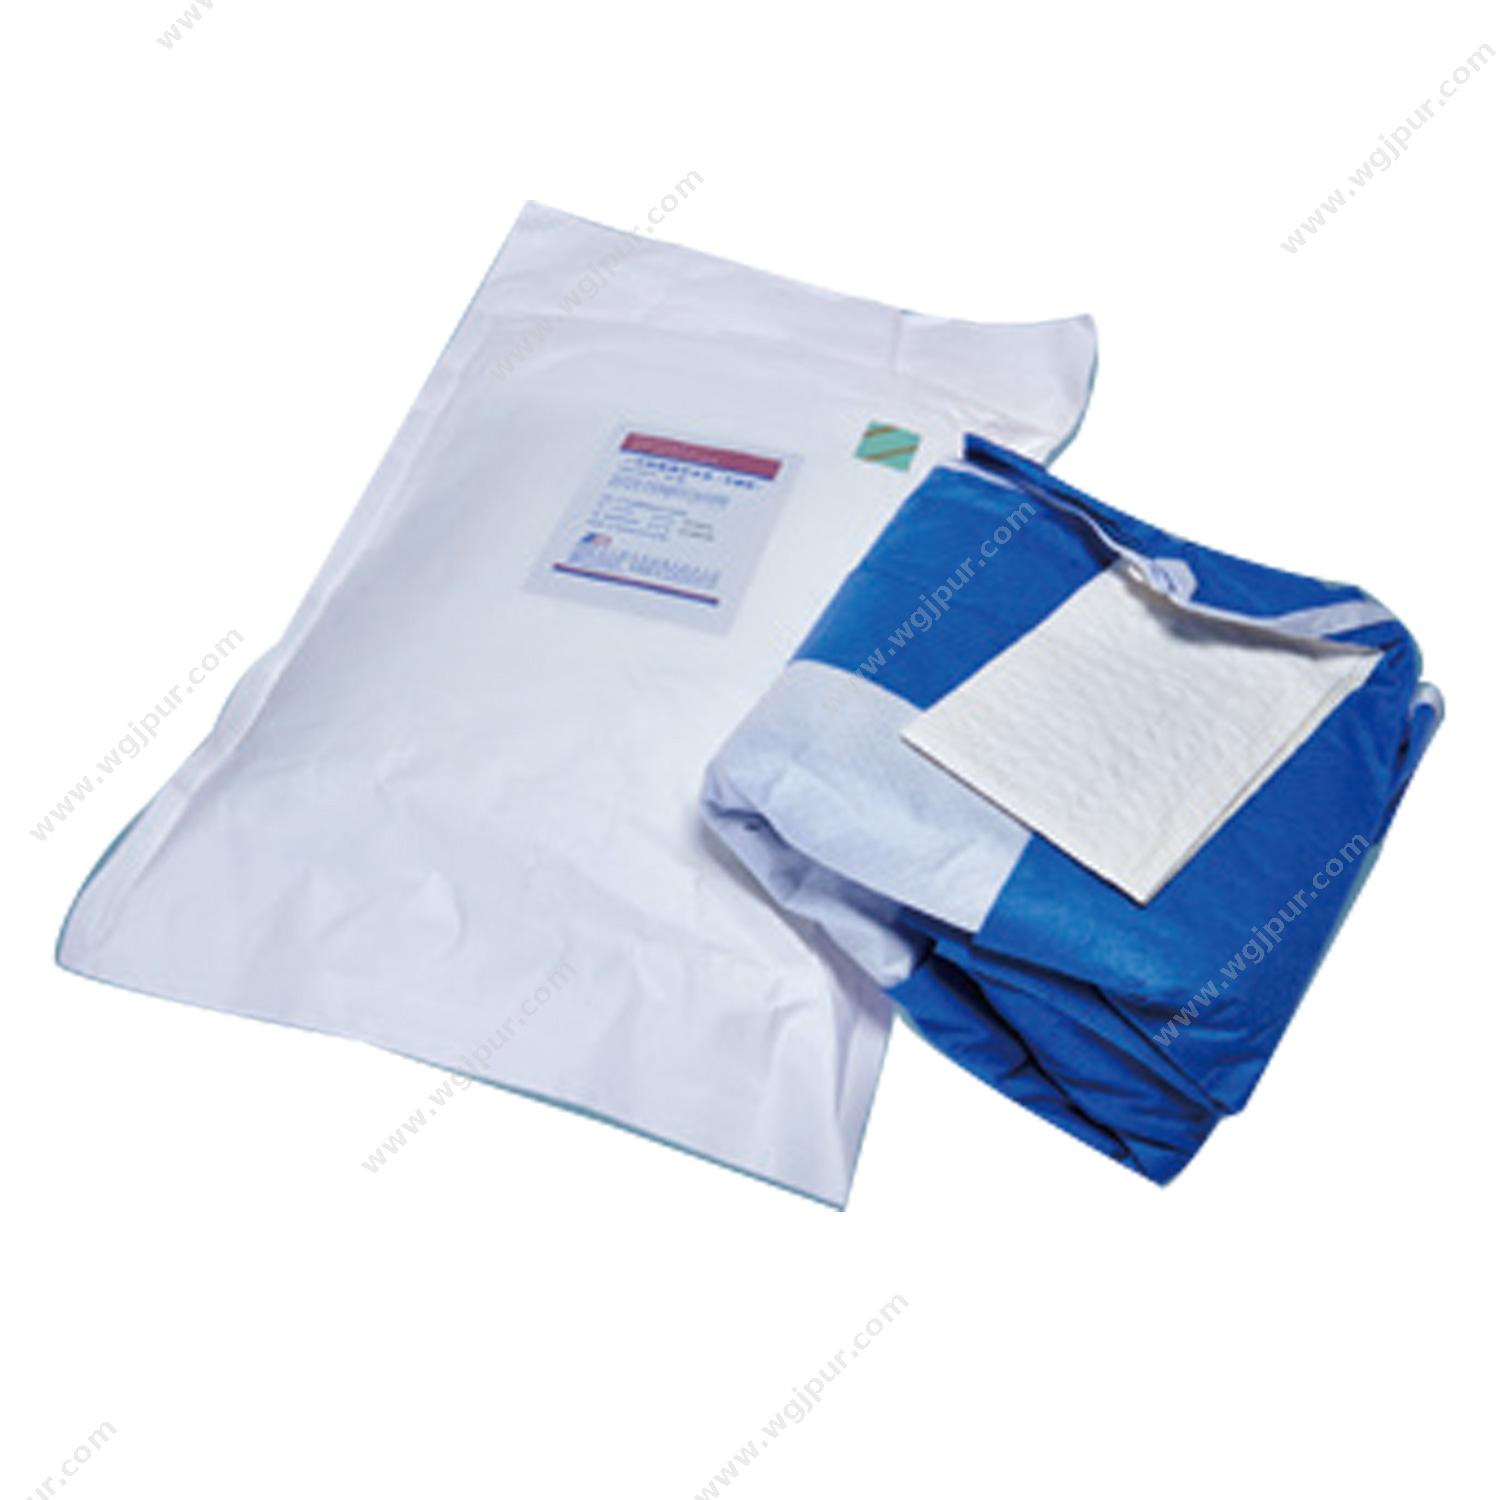 振德一次性使用手术衣 标准性能 120×140cm 35g（1件/袋 50件/箱）手术衣